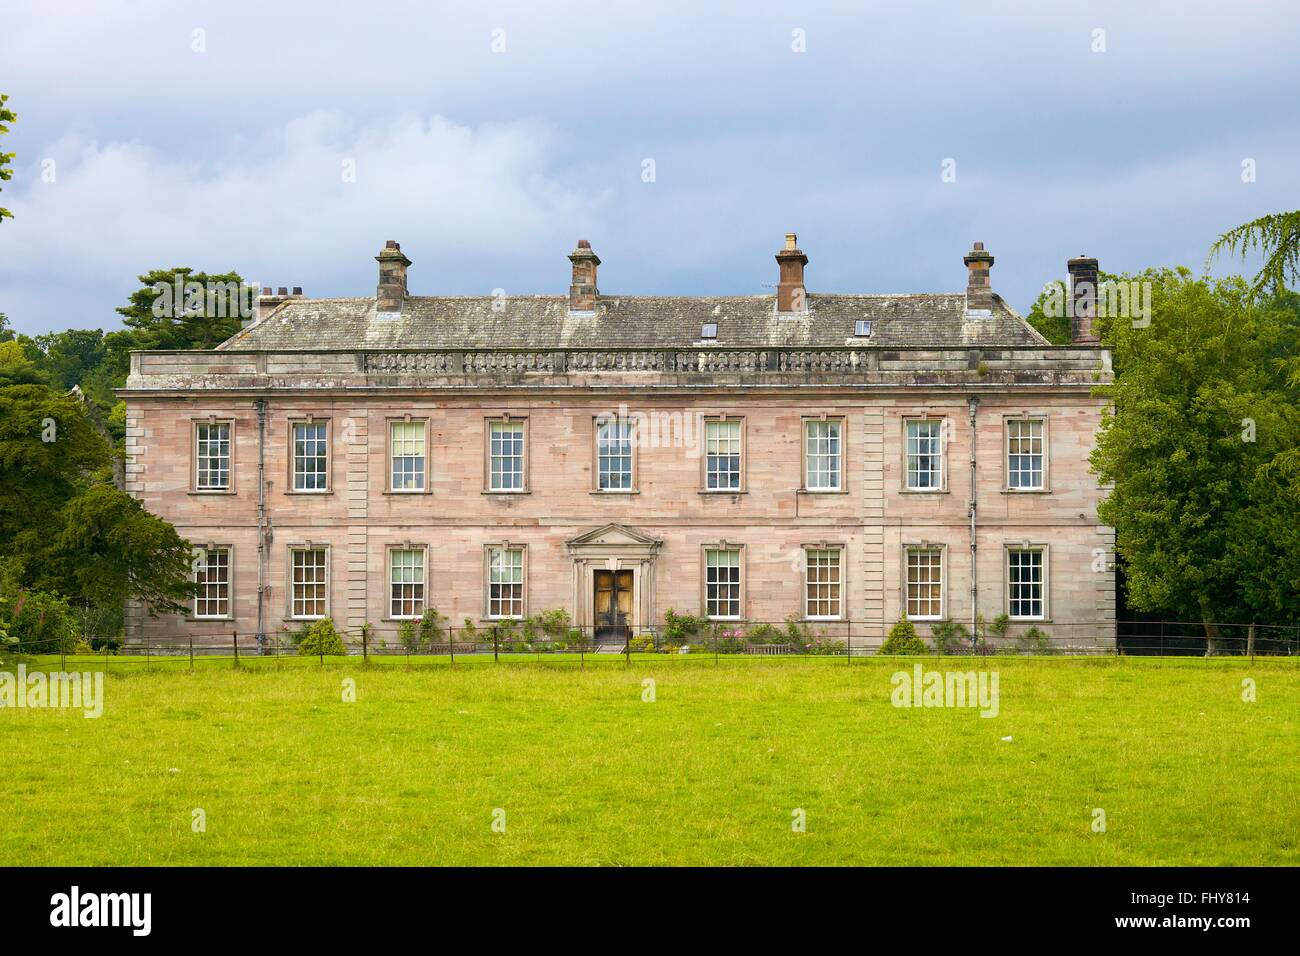 Dalemain Mansion & Giardini storici. Parco Nazionale del Distretto dei Laghi, Eden District, Penrith, Cumbria, England, Regno Unito, Gran Bretagna. Foto Stock